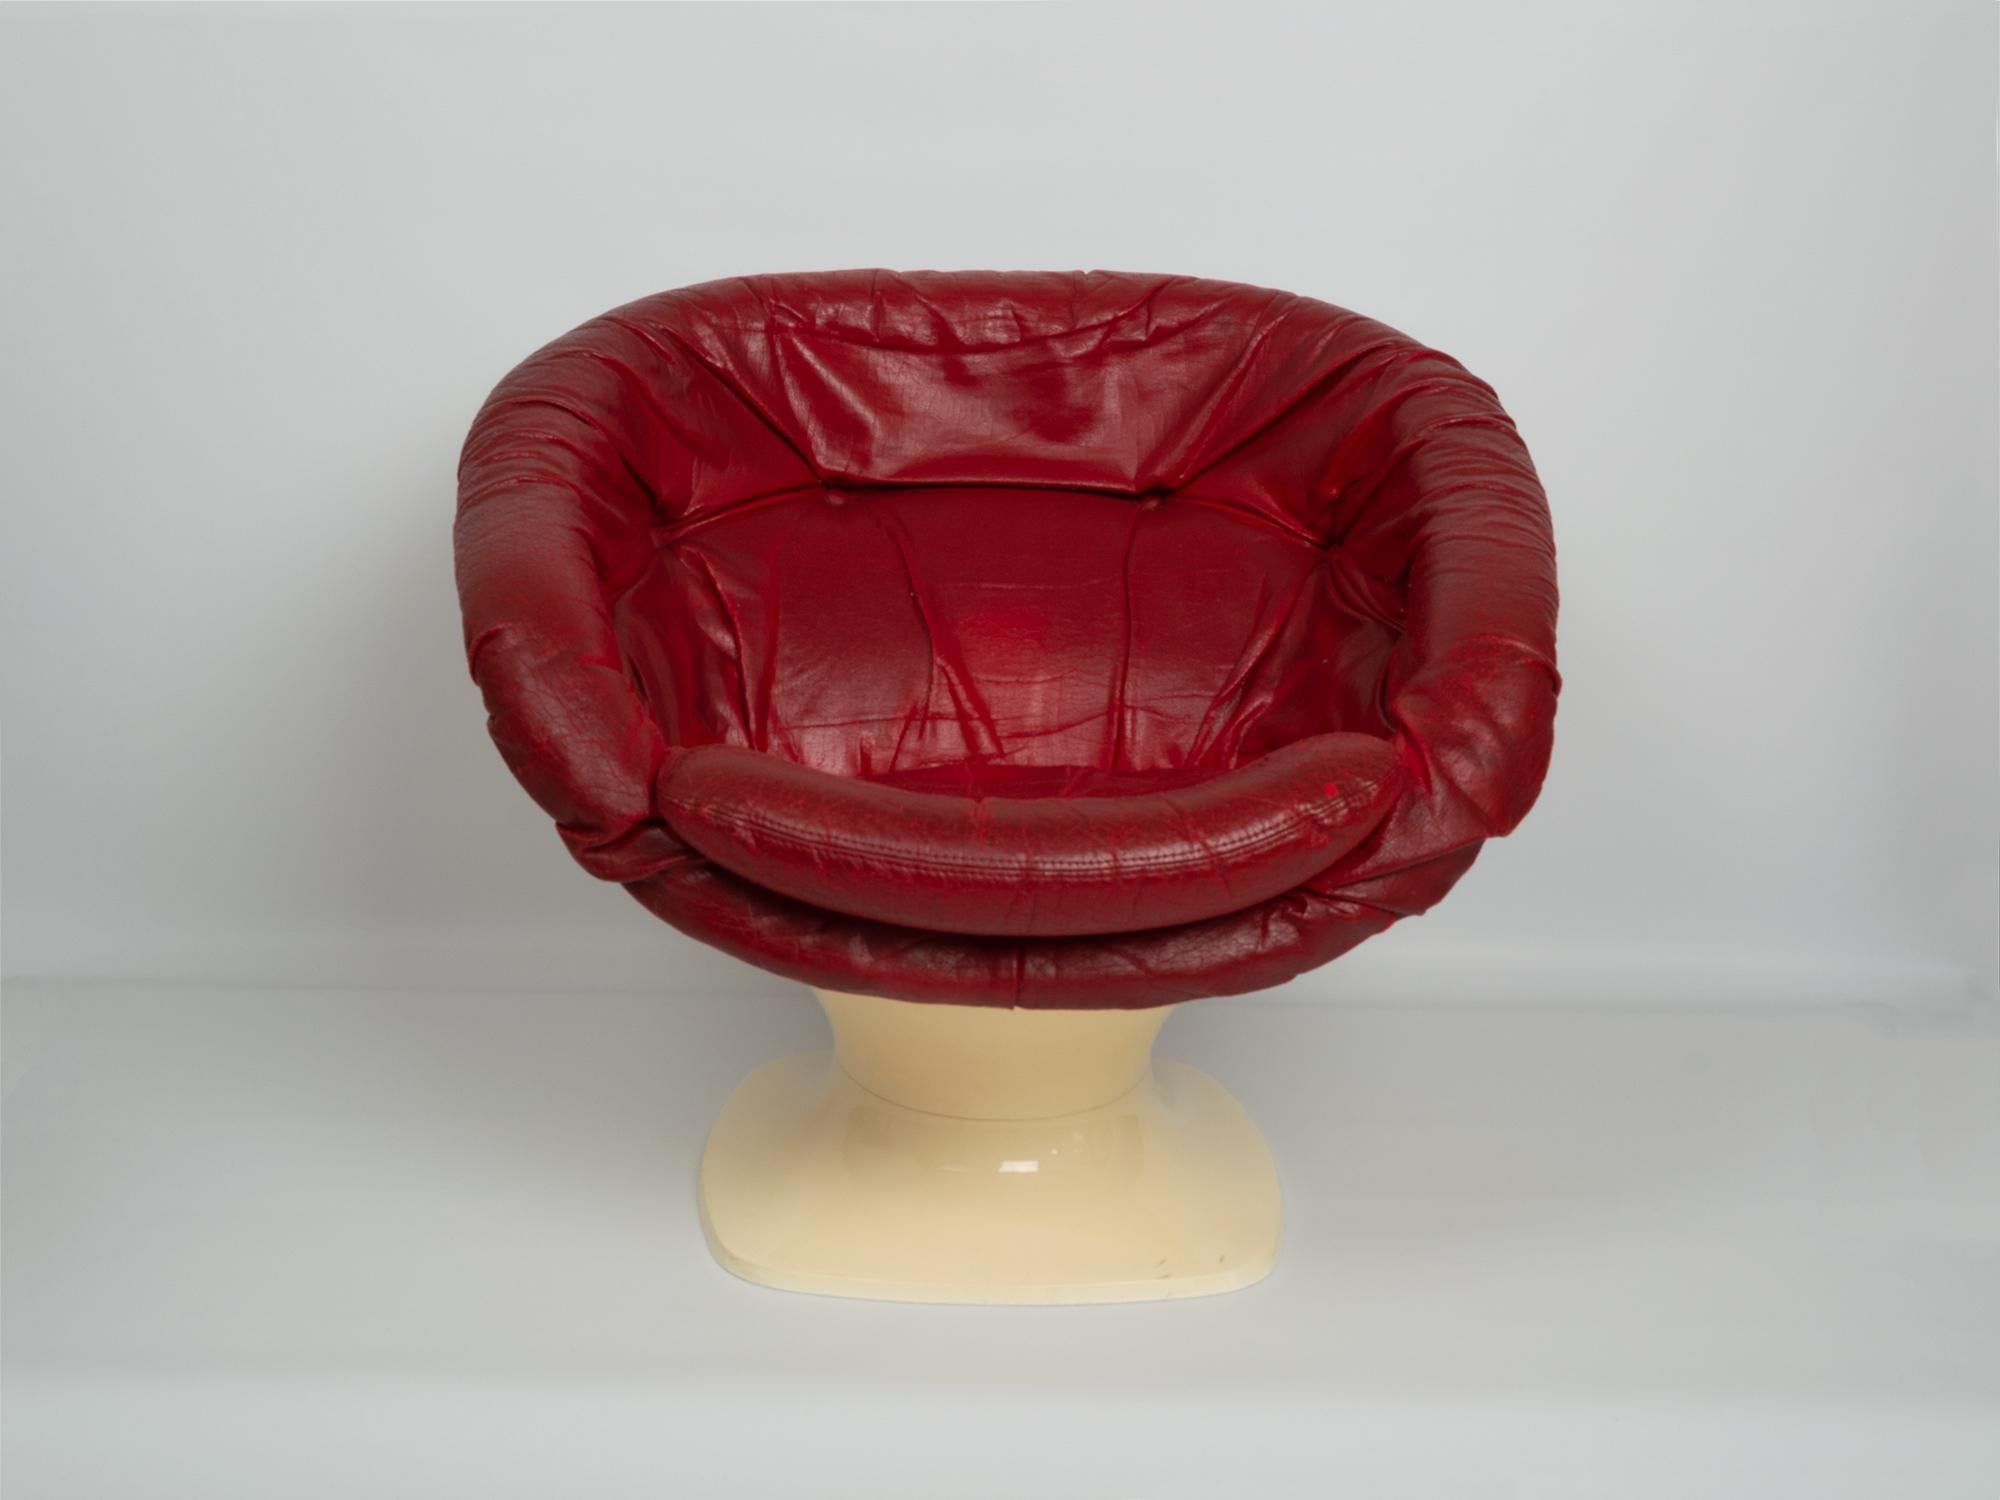 Ein Space-Age-Clubsessel aus der Jahrhundertmitte von Raphael Raffel, Frankreich 1965.

Der Klubsessel hat eine Tulpenform mit einer abgerundeten Sitzfläche, die mit dem originalen roten Lederbezug versehen ist. 

Der Kunststoffsockel ist in